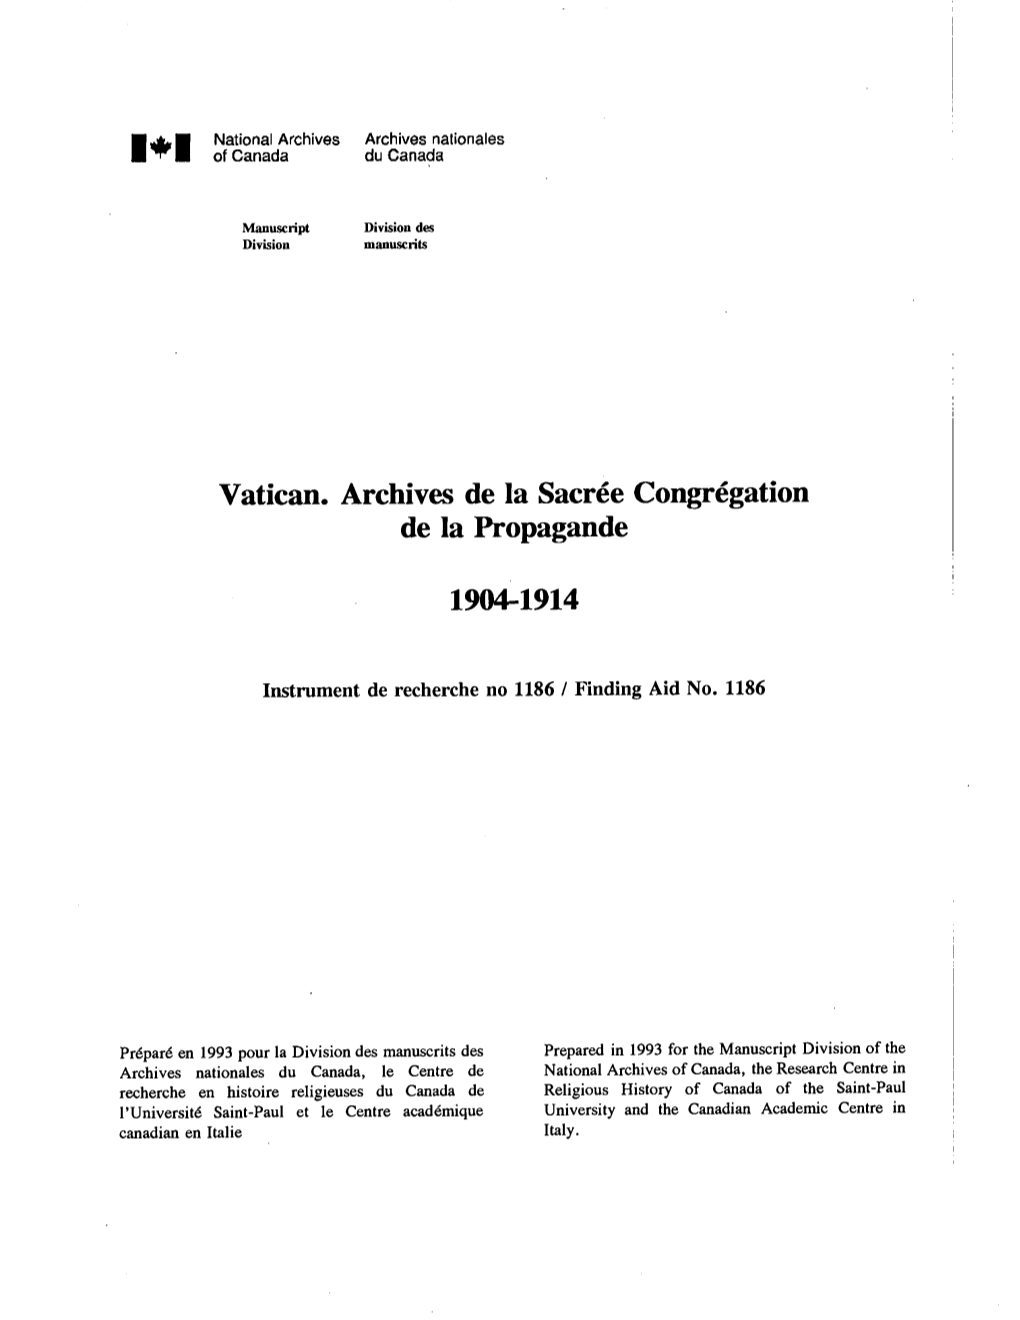 Vatican. Archives De La Sacree Congregation De La Propagande